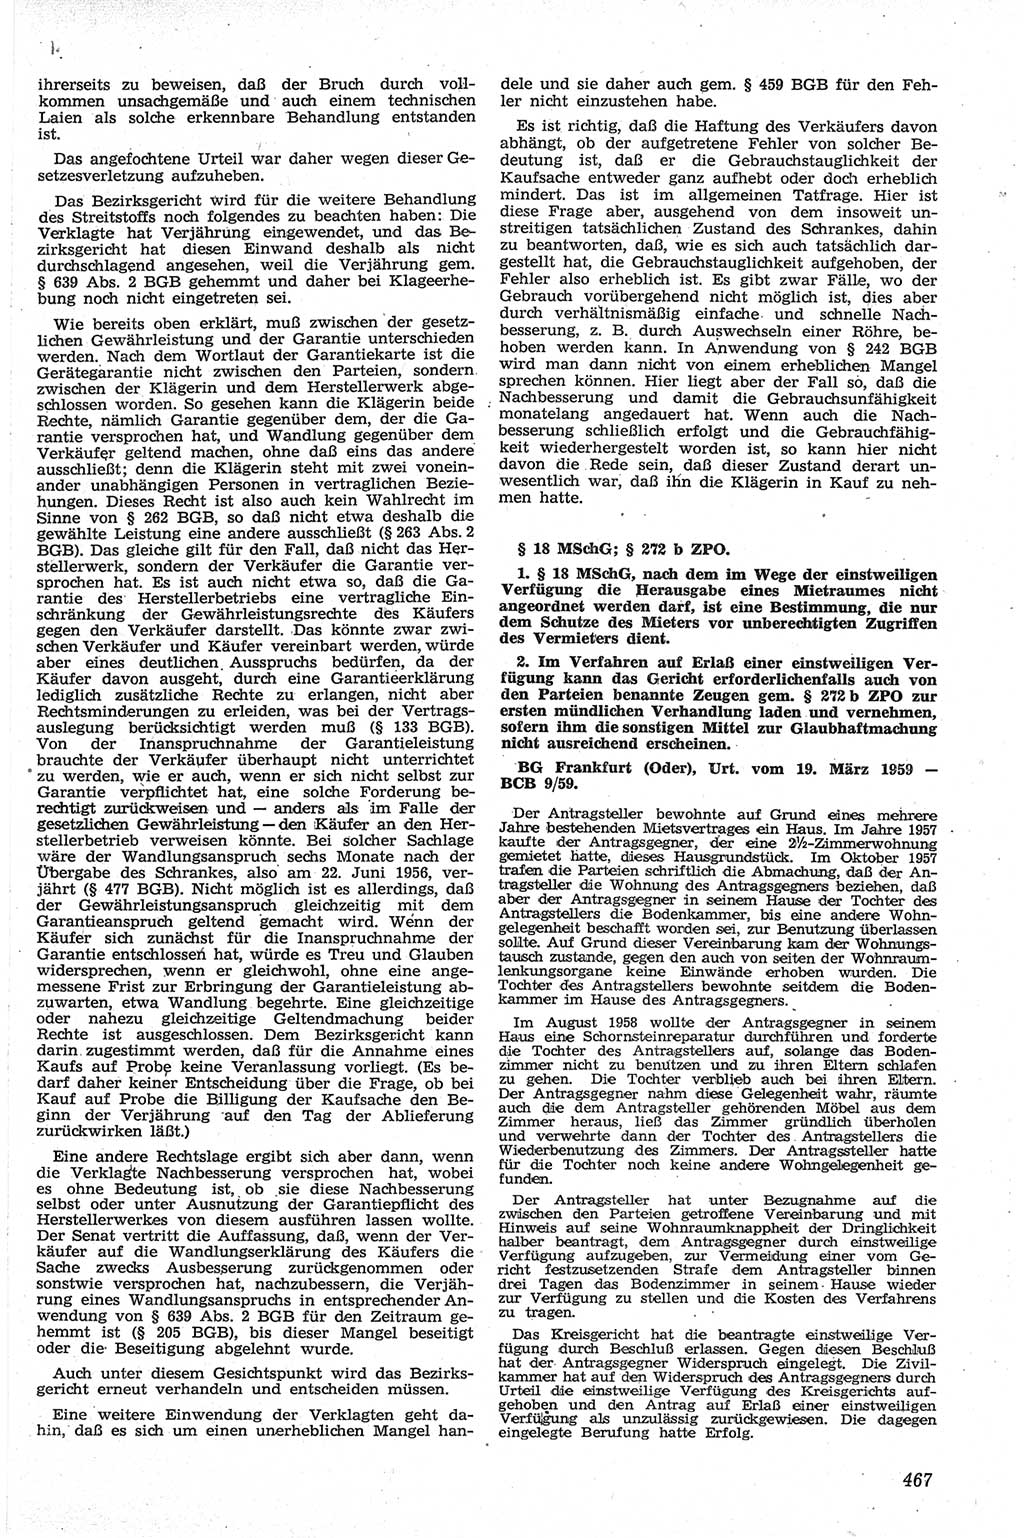 Neue Justiz (NJ), Zeitschrift für Recht und Rechtswissenschaft [Deutsche Demokratische Republik (DDR)], 13. Jahrgang 1959, Seite 467 (NJ DDR 1959, S. 467)